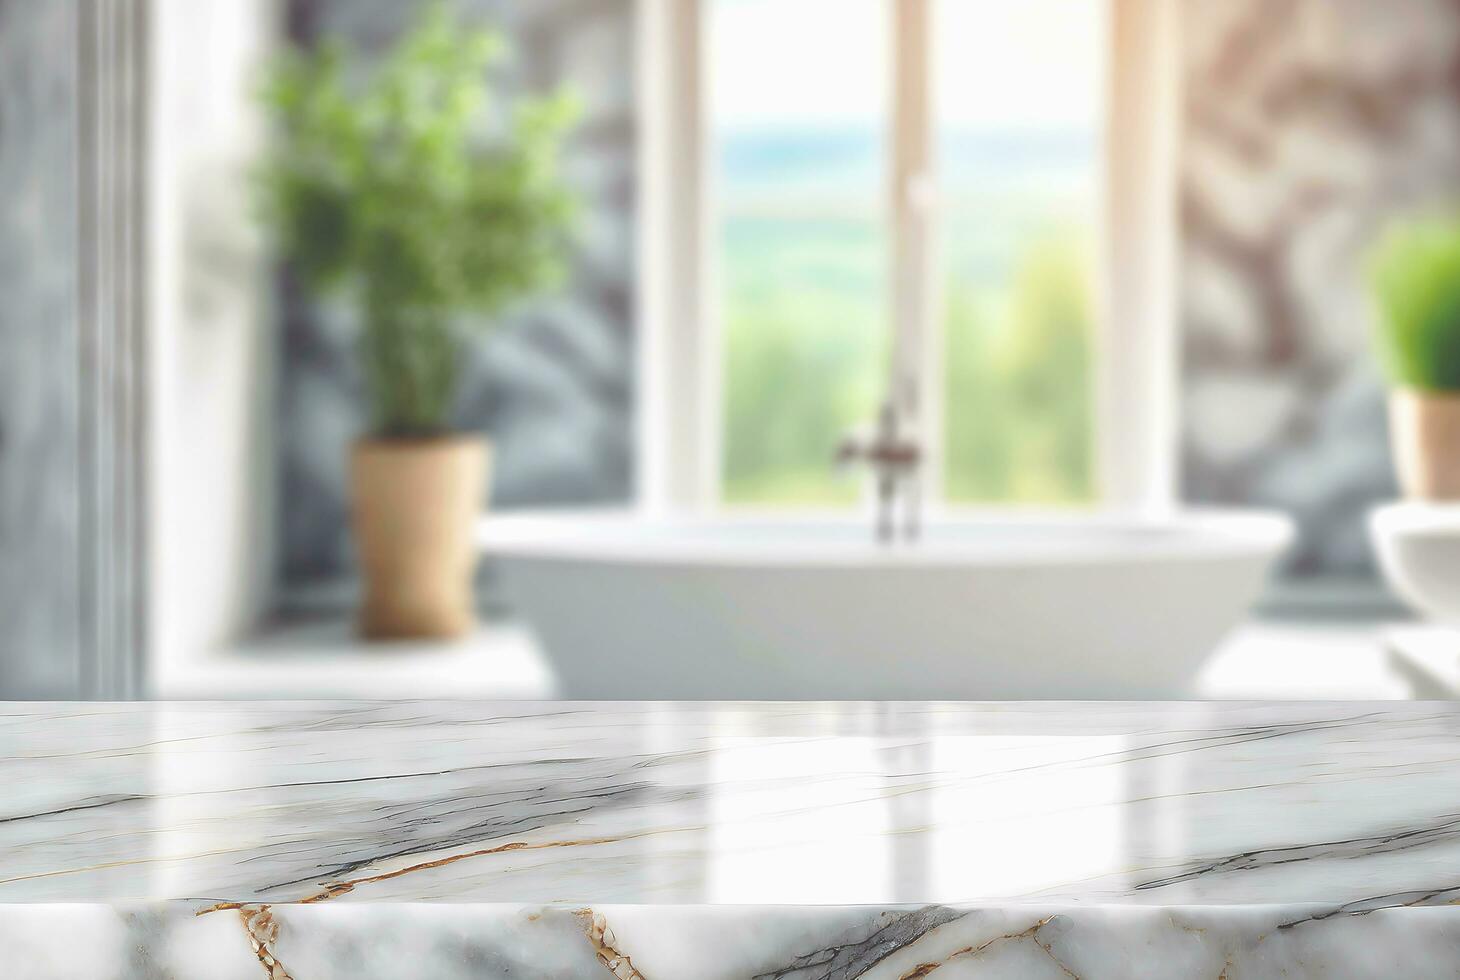 badrum bakgrunder och marmor bänkskivor kan vara Begagnade som modeller för produkt visa montage foto